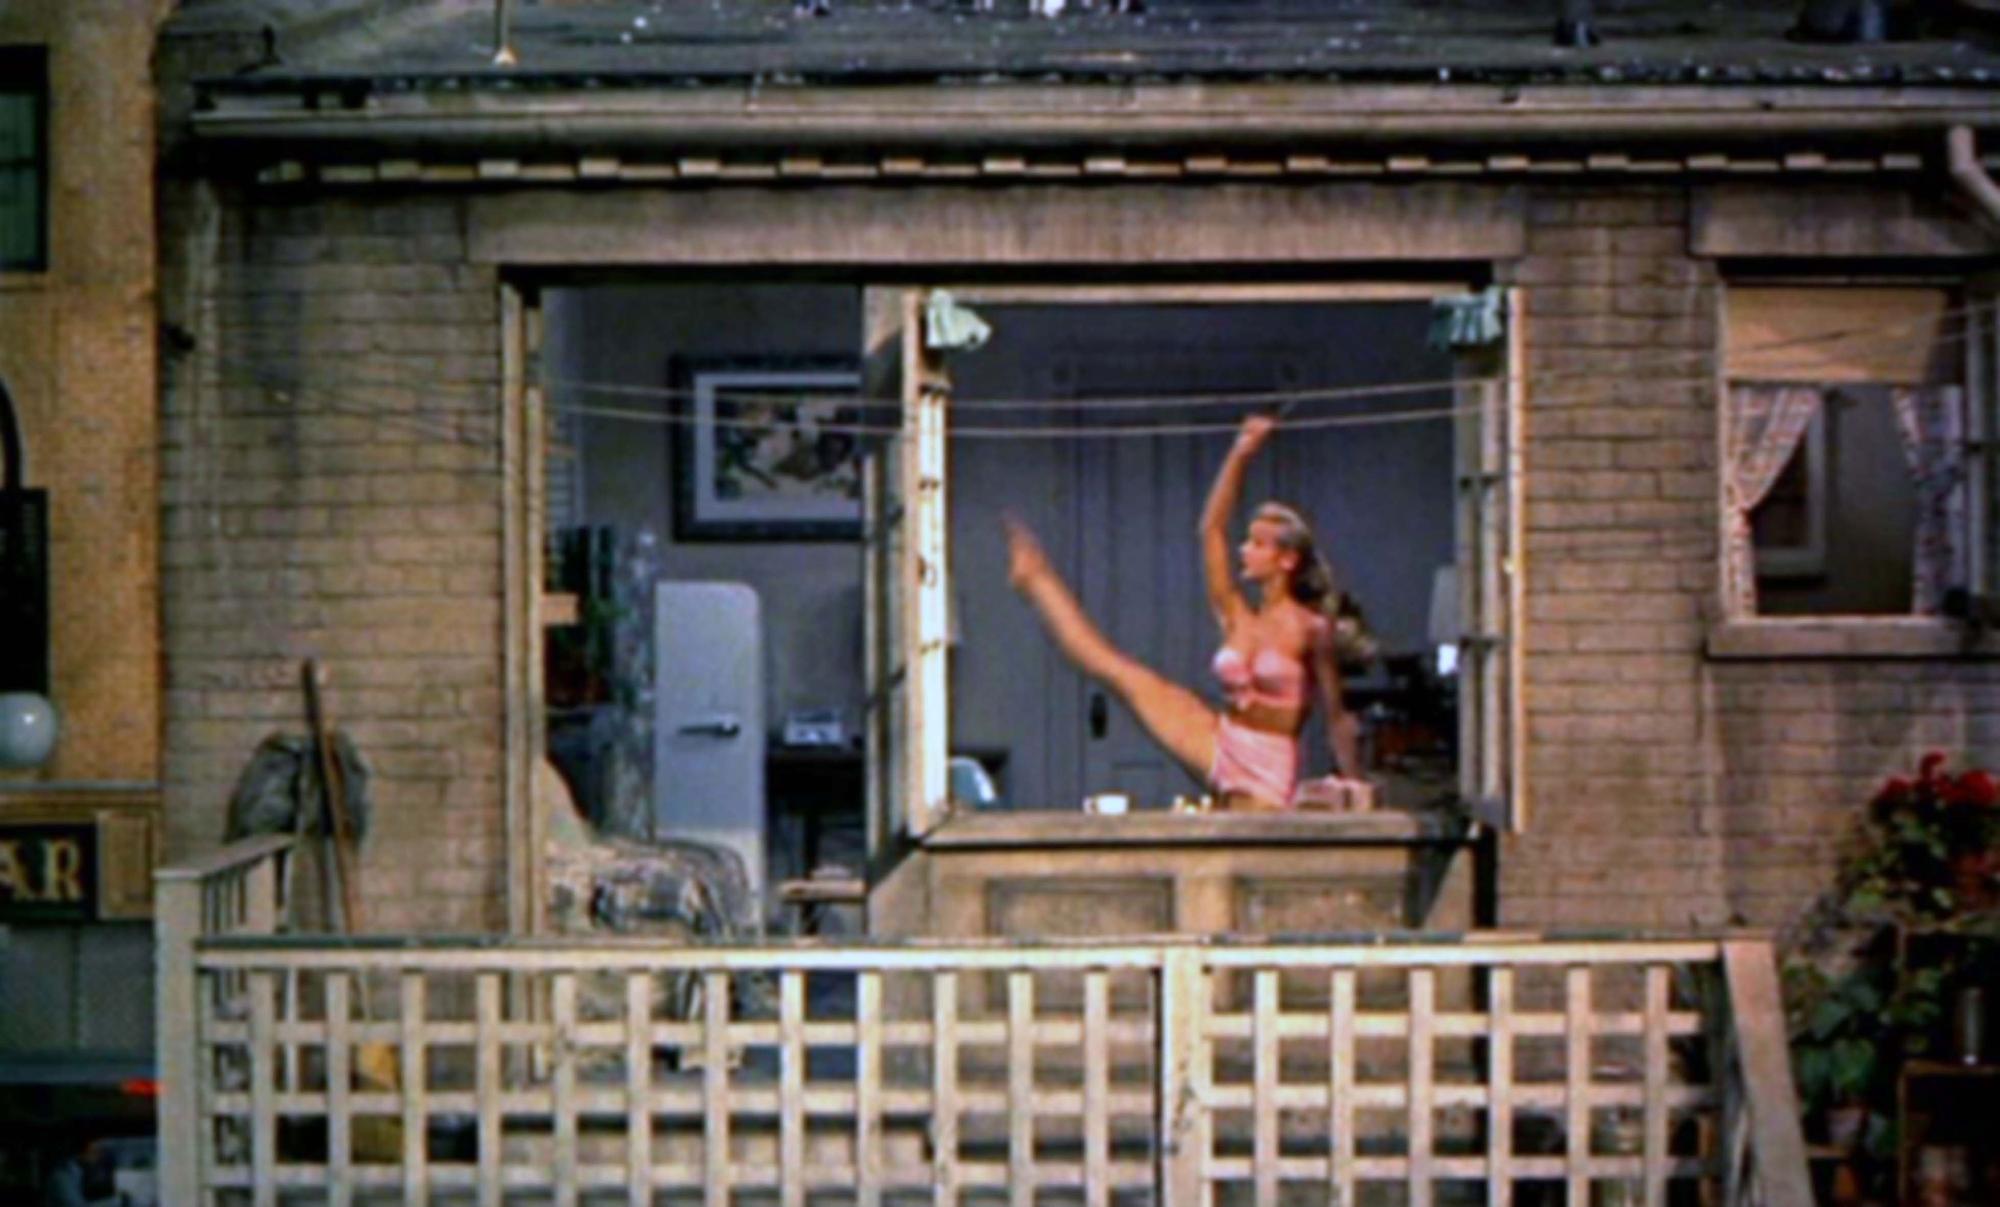 La voisine danseuse passe ses journées à s'entraîner. [AFP - Collection Cinema / Photo12]